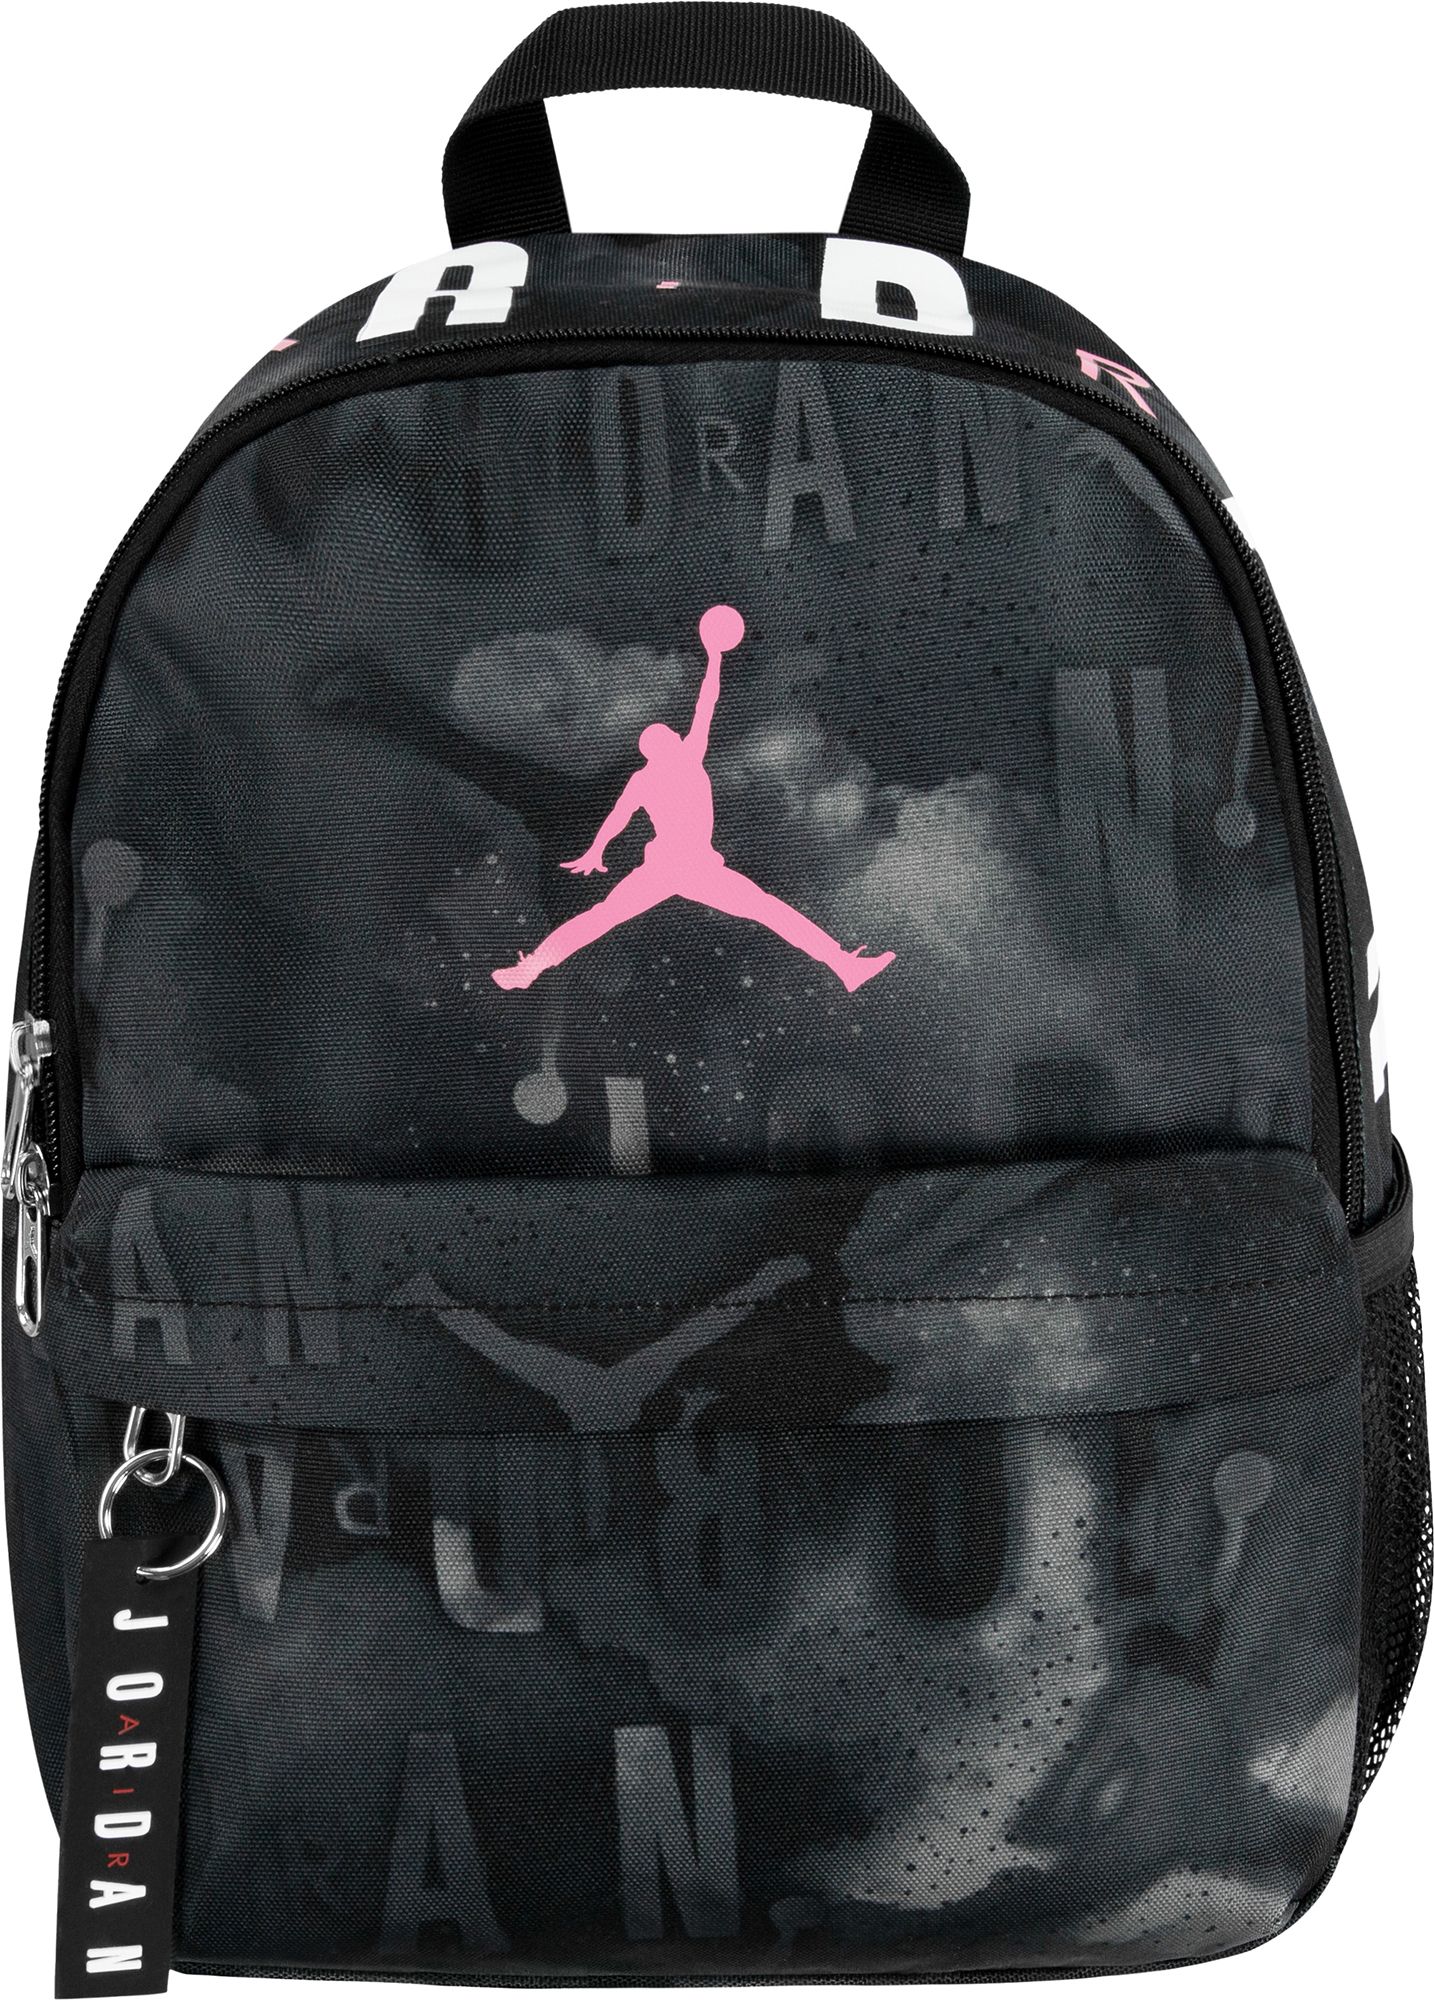 Jordan / Jumpman Mini Backpack